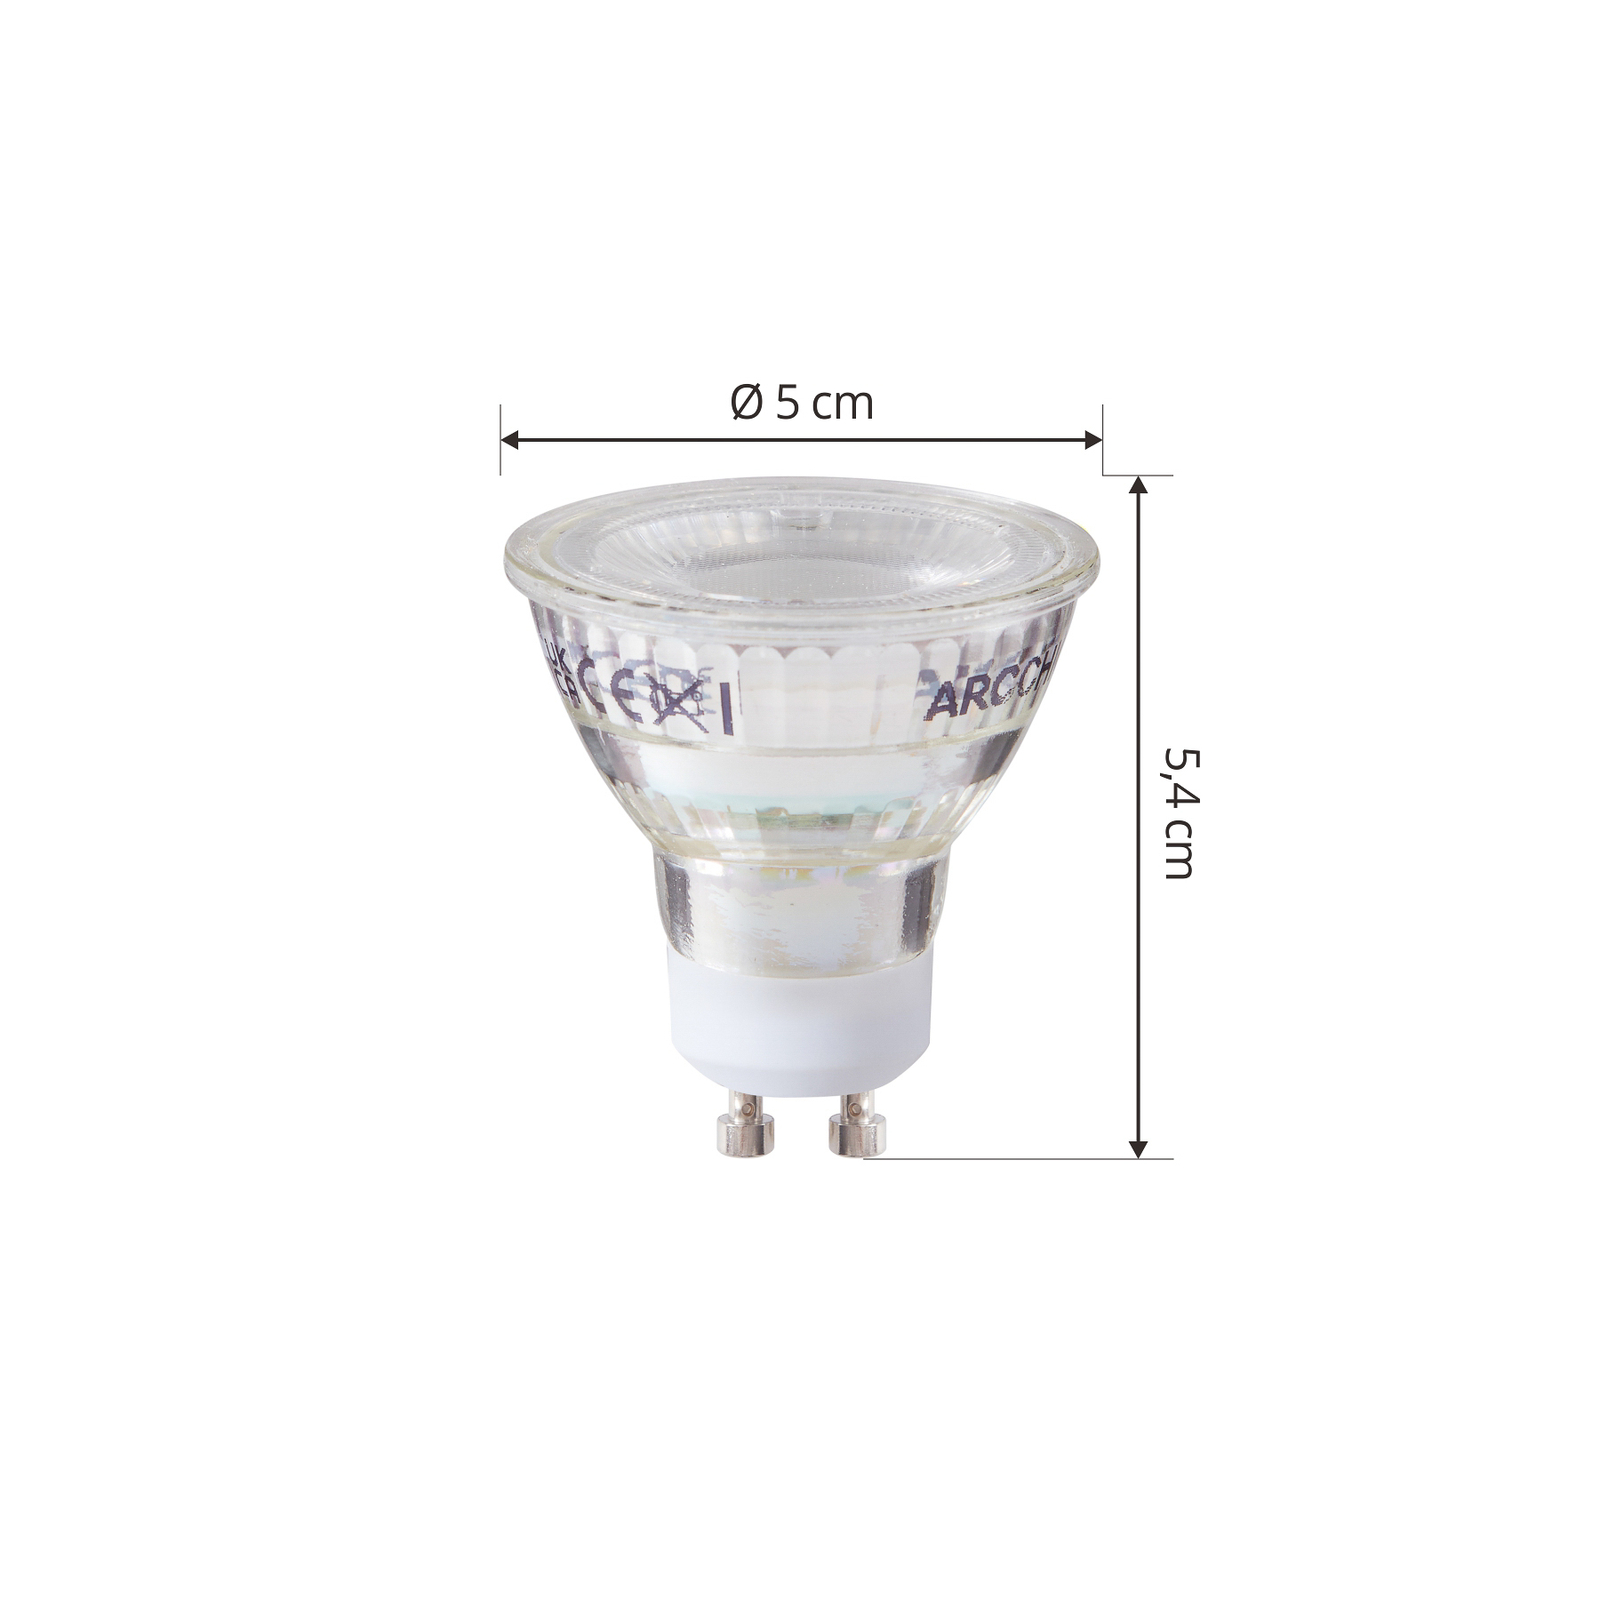 Arcchio LED lamp GU10 2,5W 6500K 450lm glas set van 3